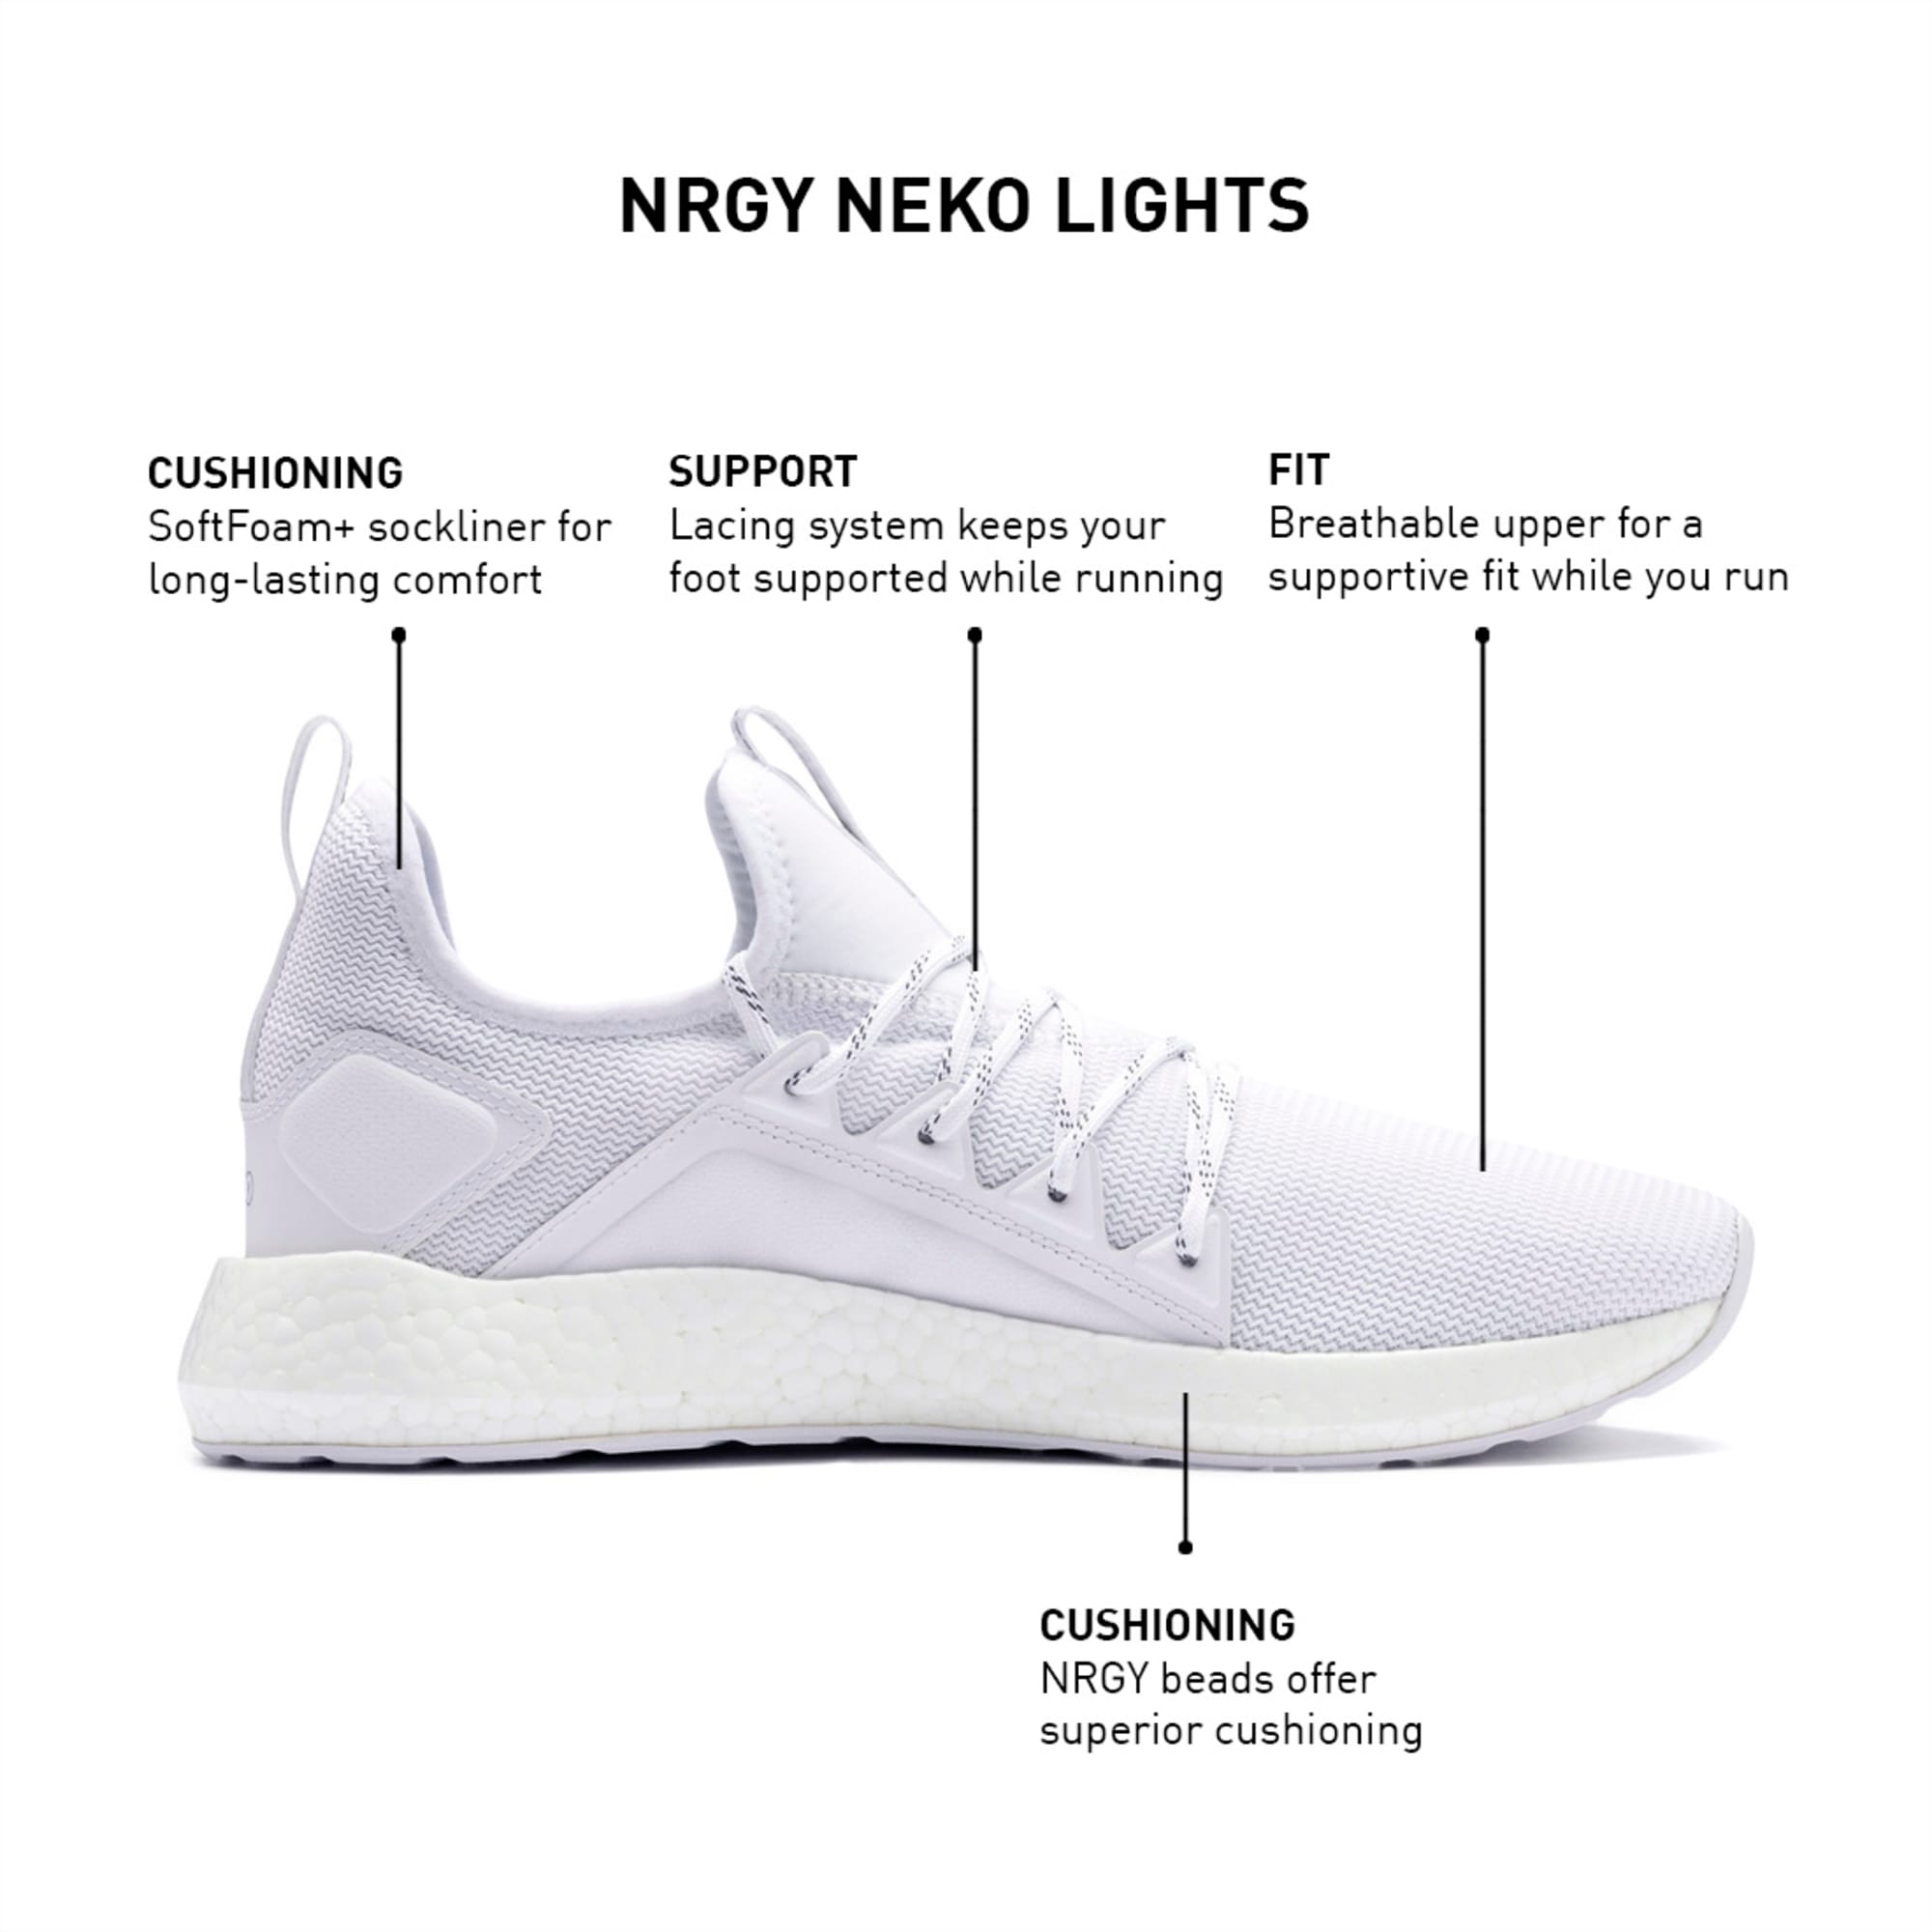 nrgy neko lights men's running shoes